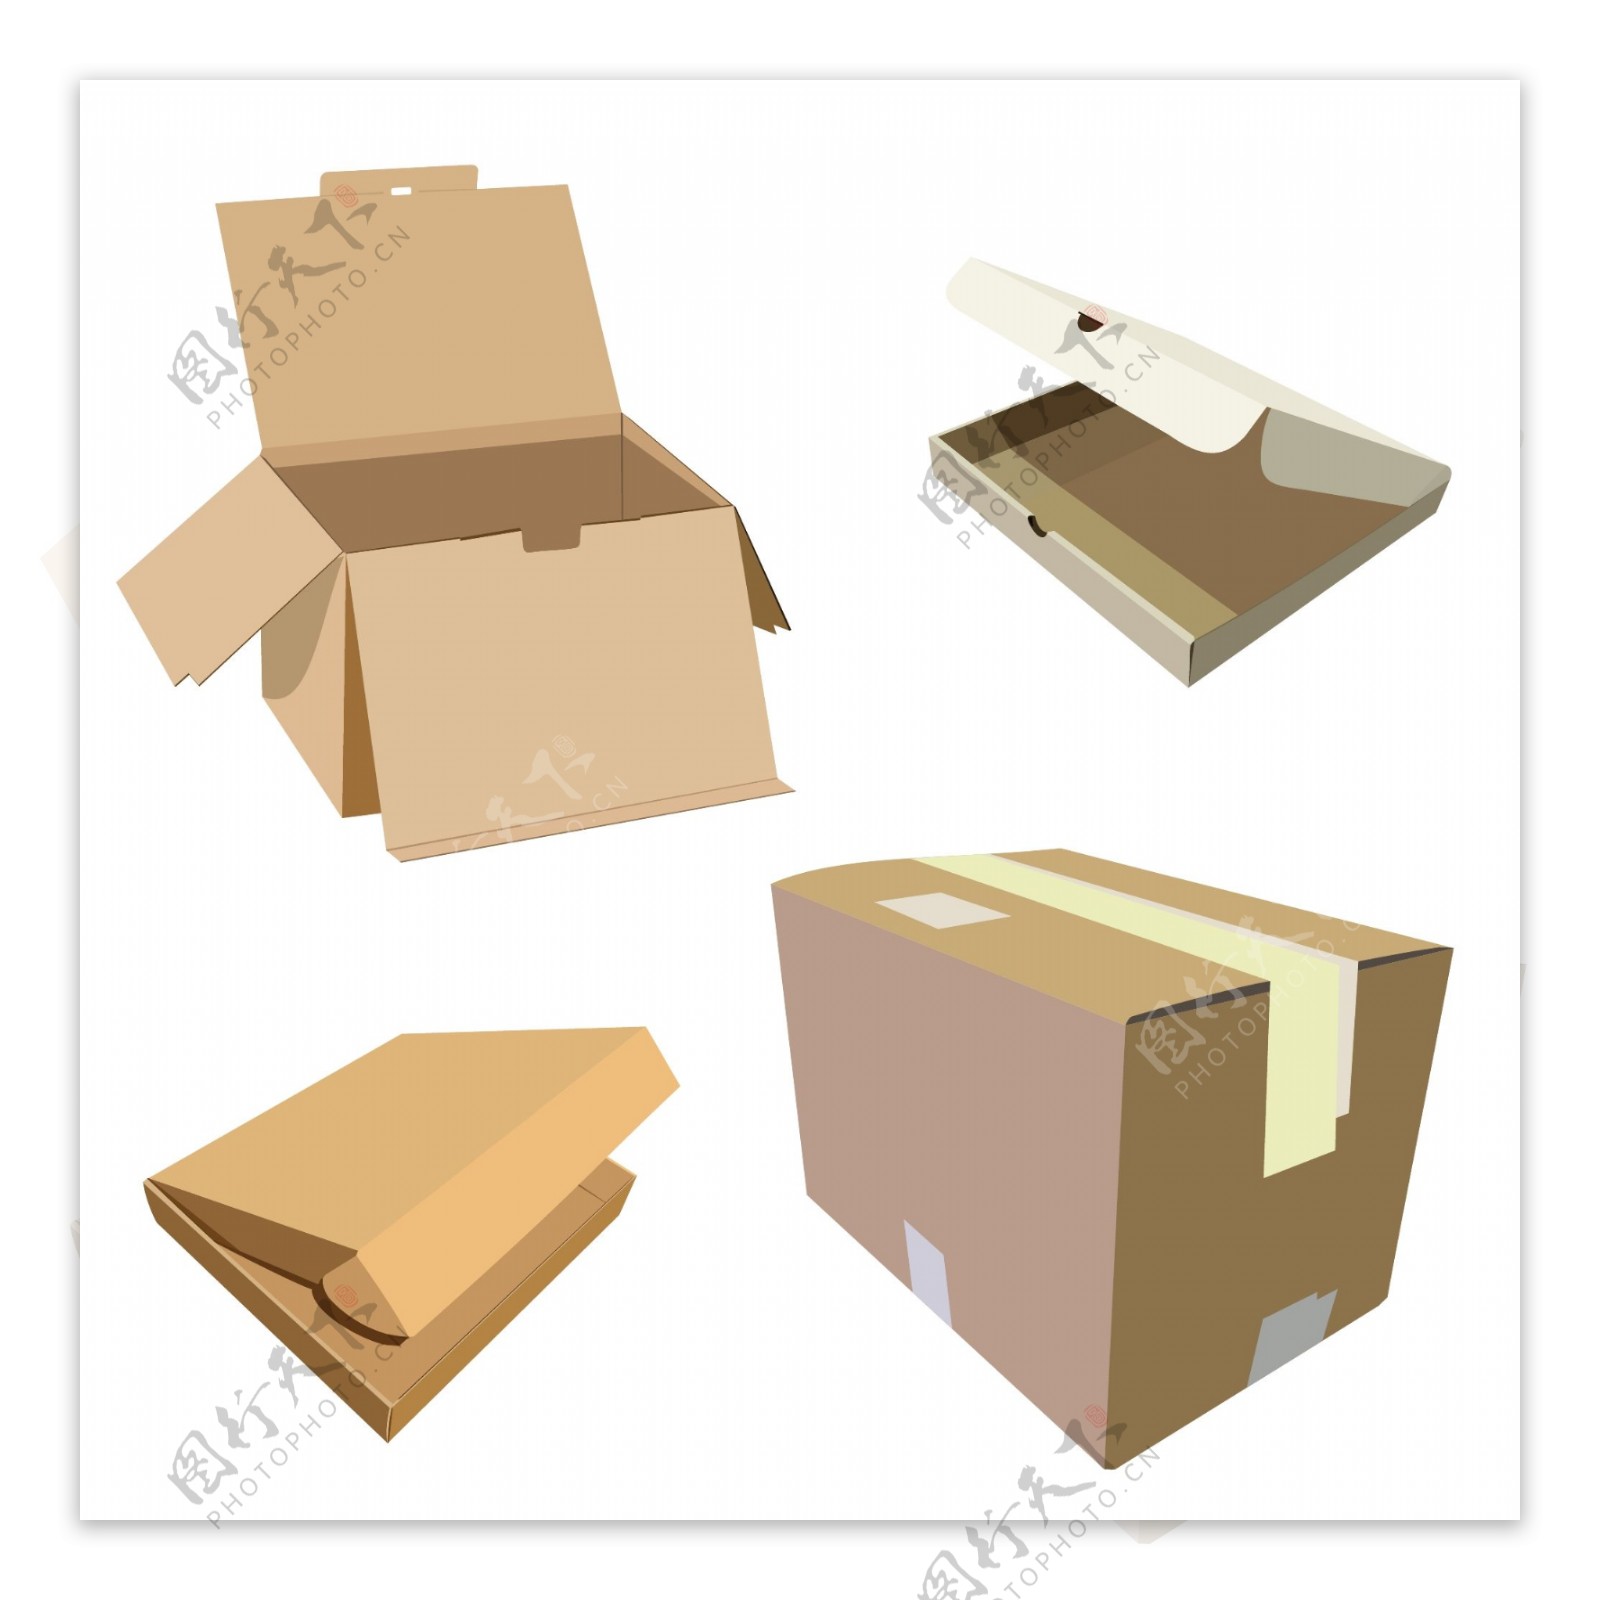 矢量素材包装盒图片素材